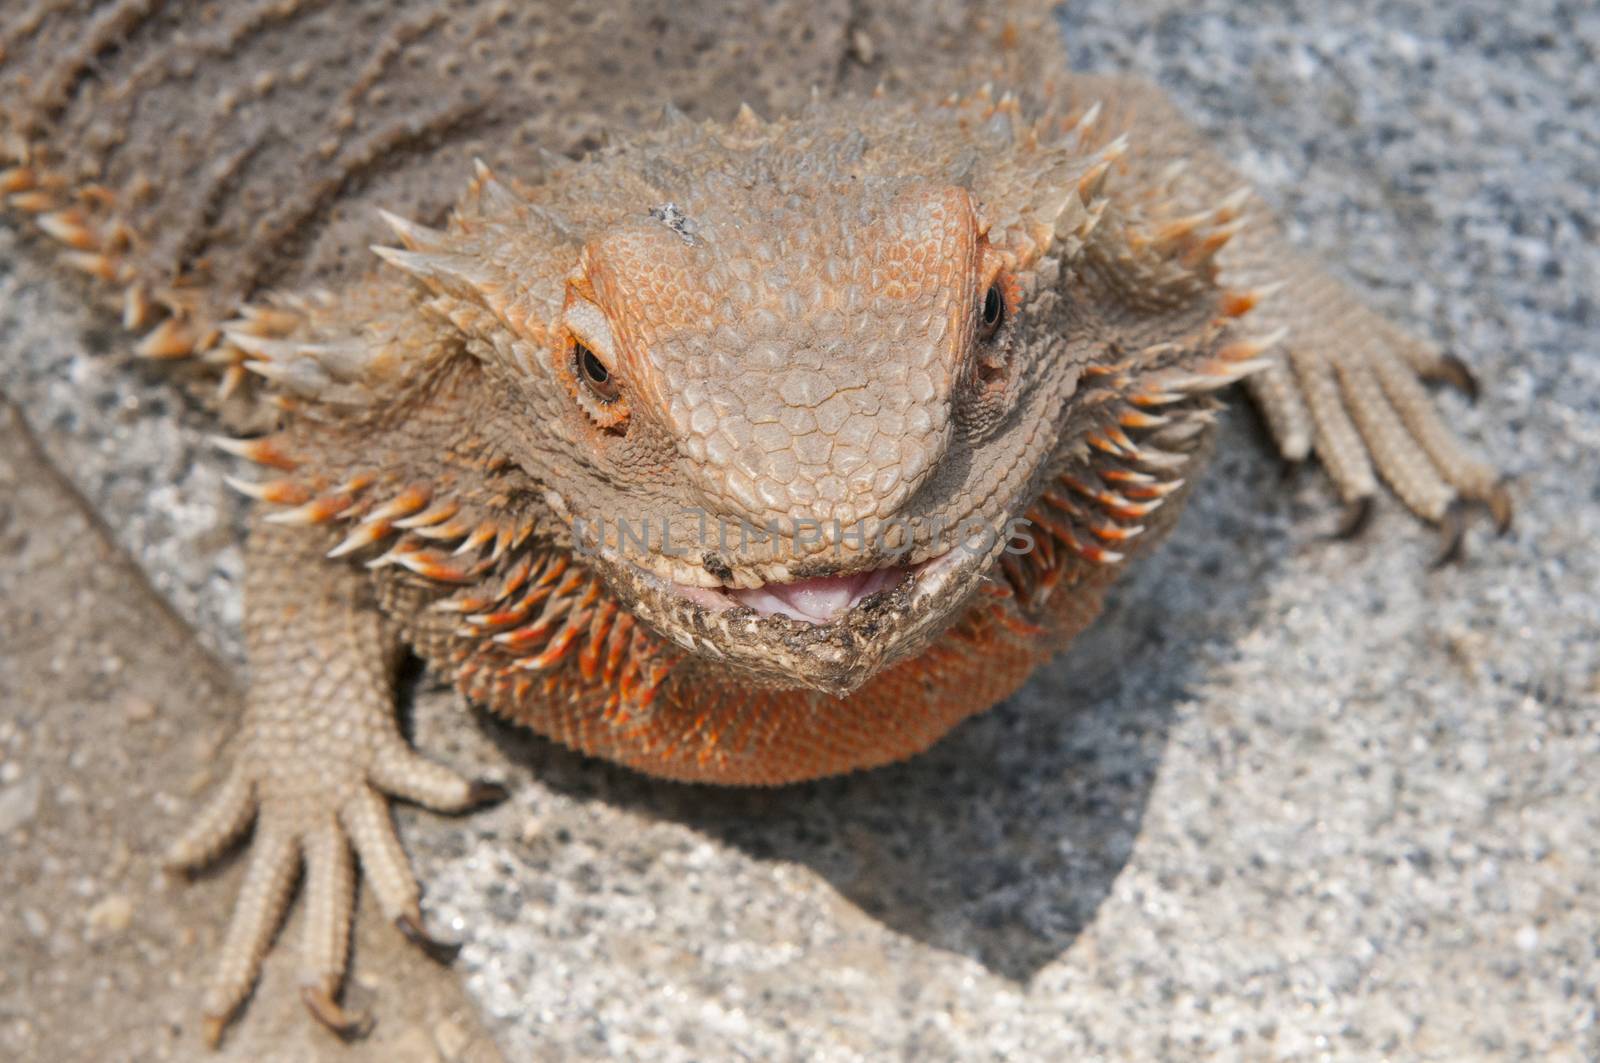 pet bearded dragon (Pogona) lizard by poolside by Njean